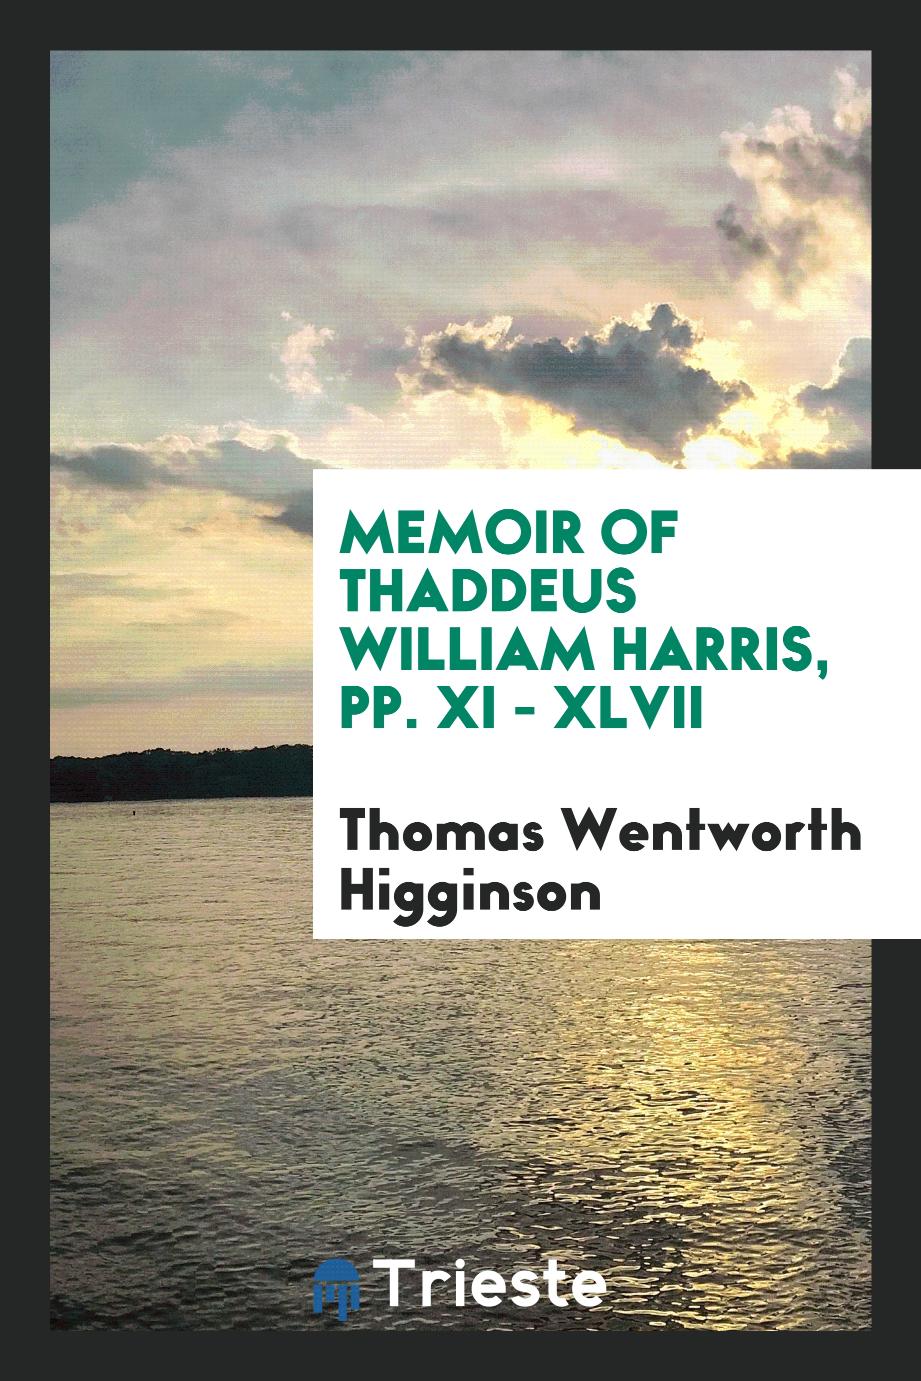 Memoir of Thaddeus William Harris, pp. xi - xlvii